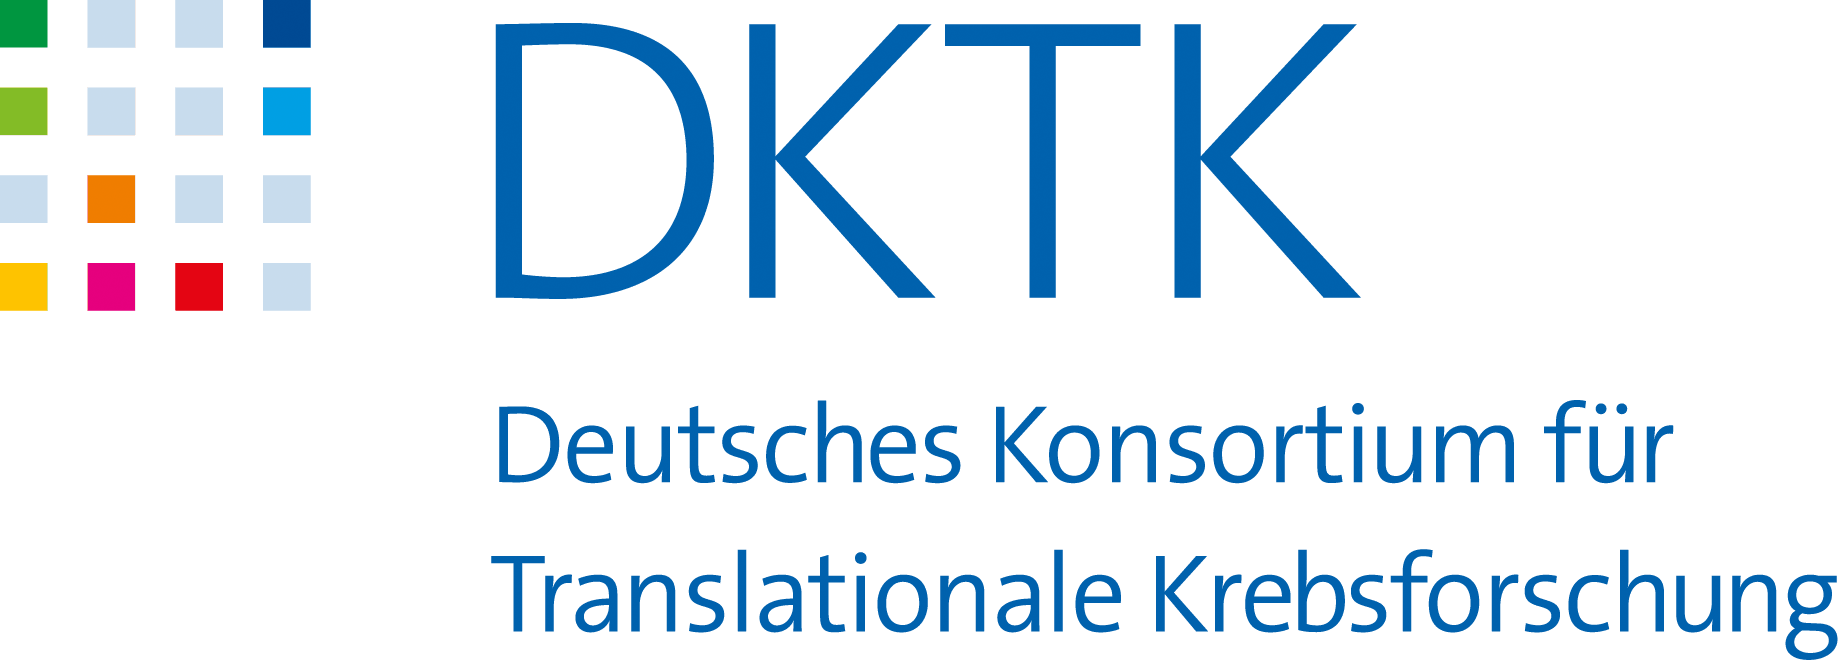 DKTK - Deutsches Konsortium für Translationale Krebsforschung